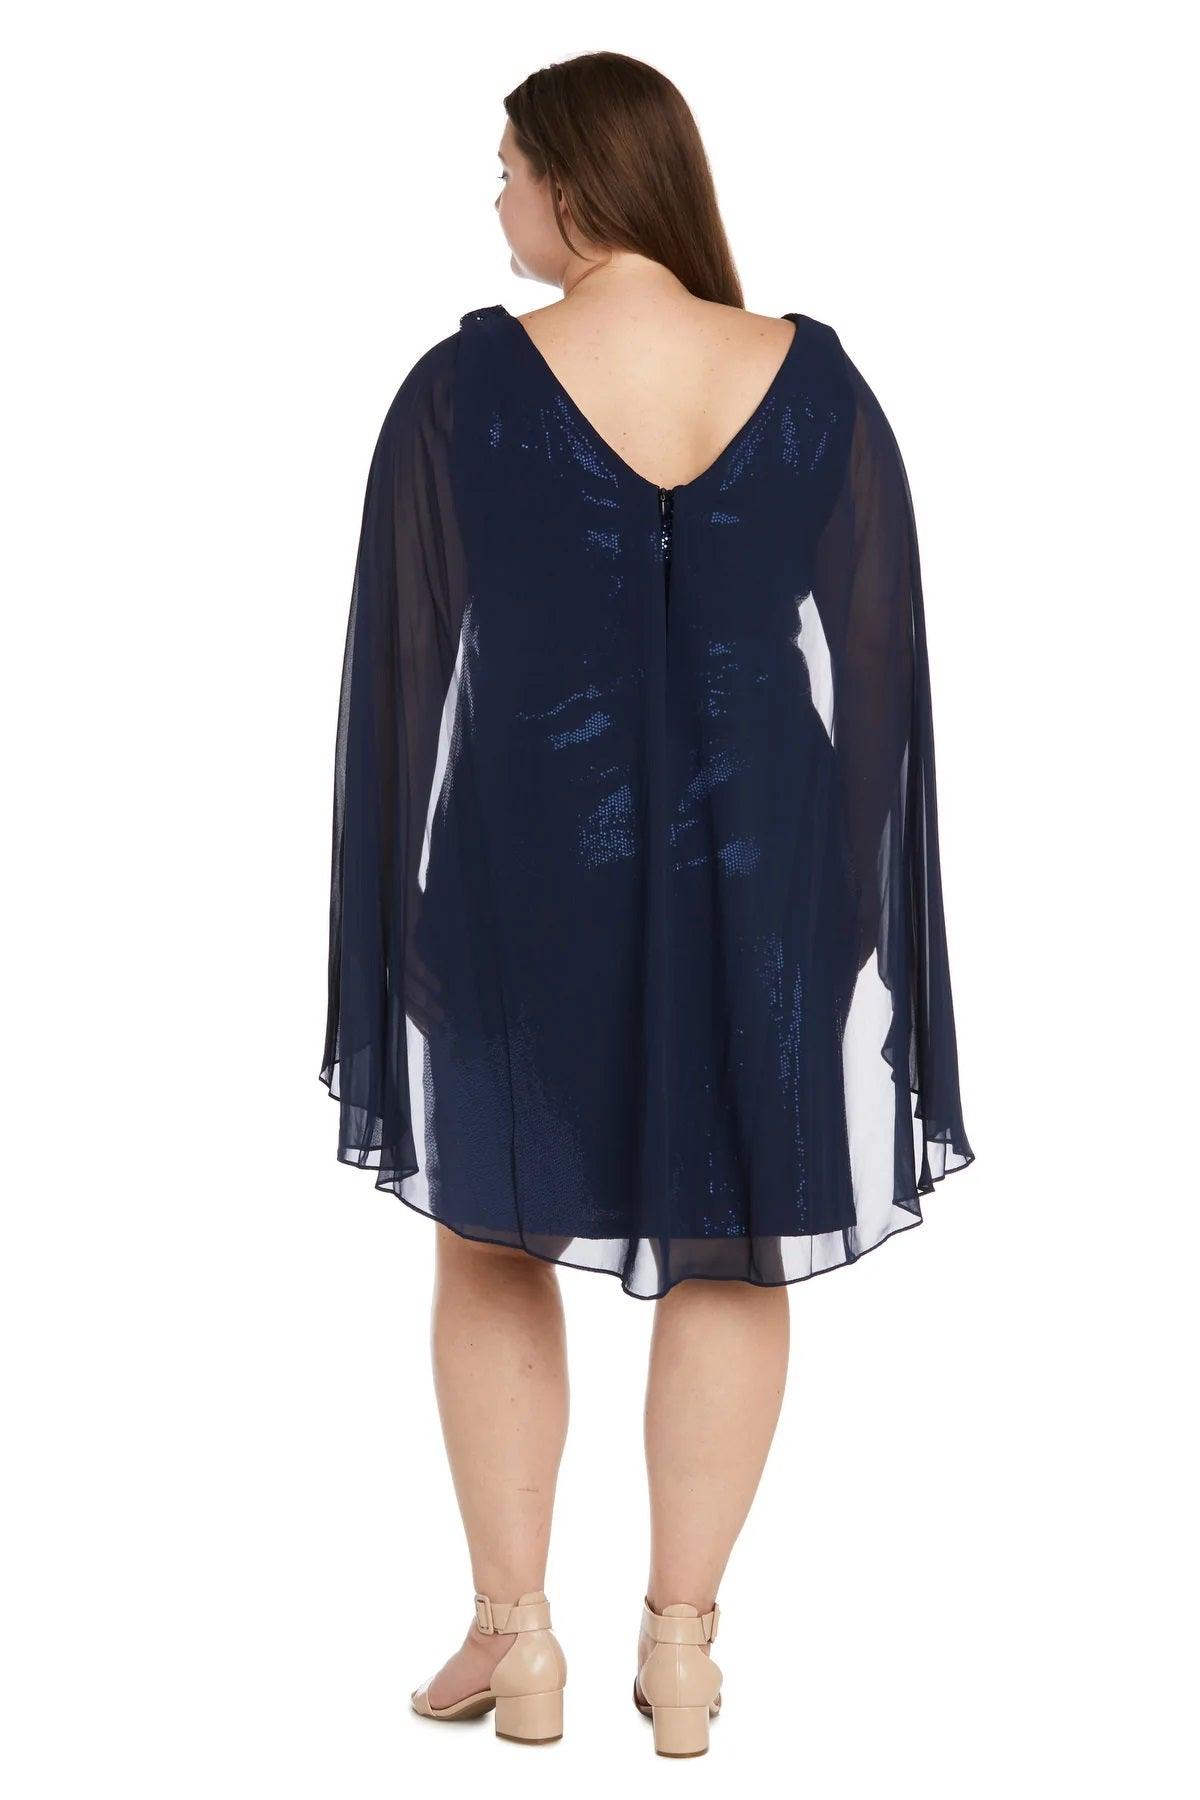 R&M Richards Short Plus Size Capelet Dress 7670W - The Dress Outlet